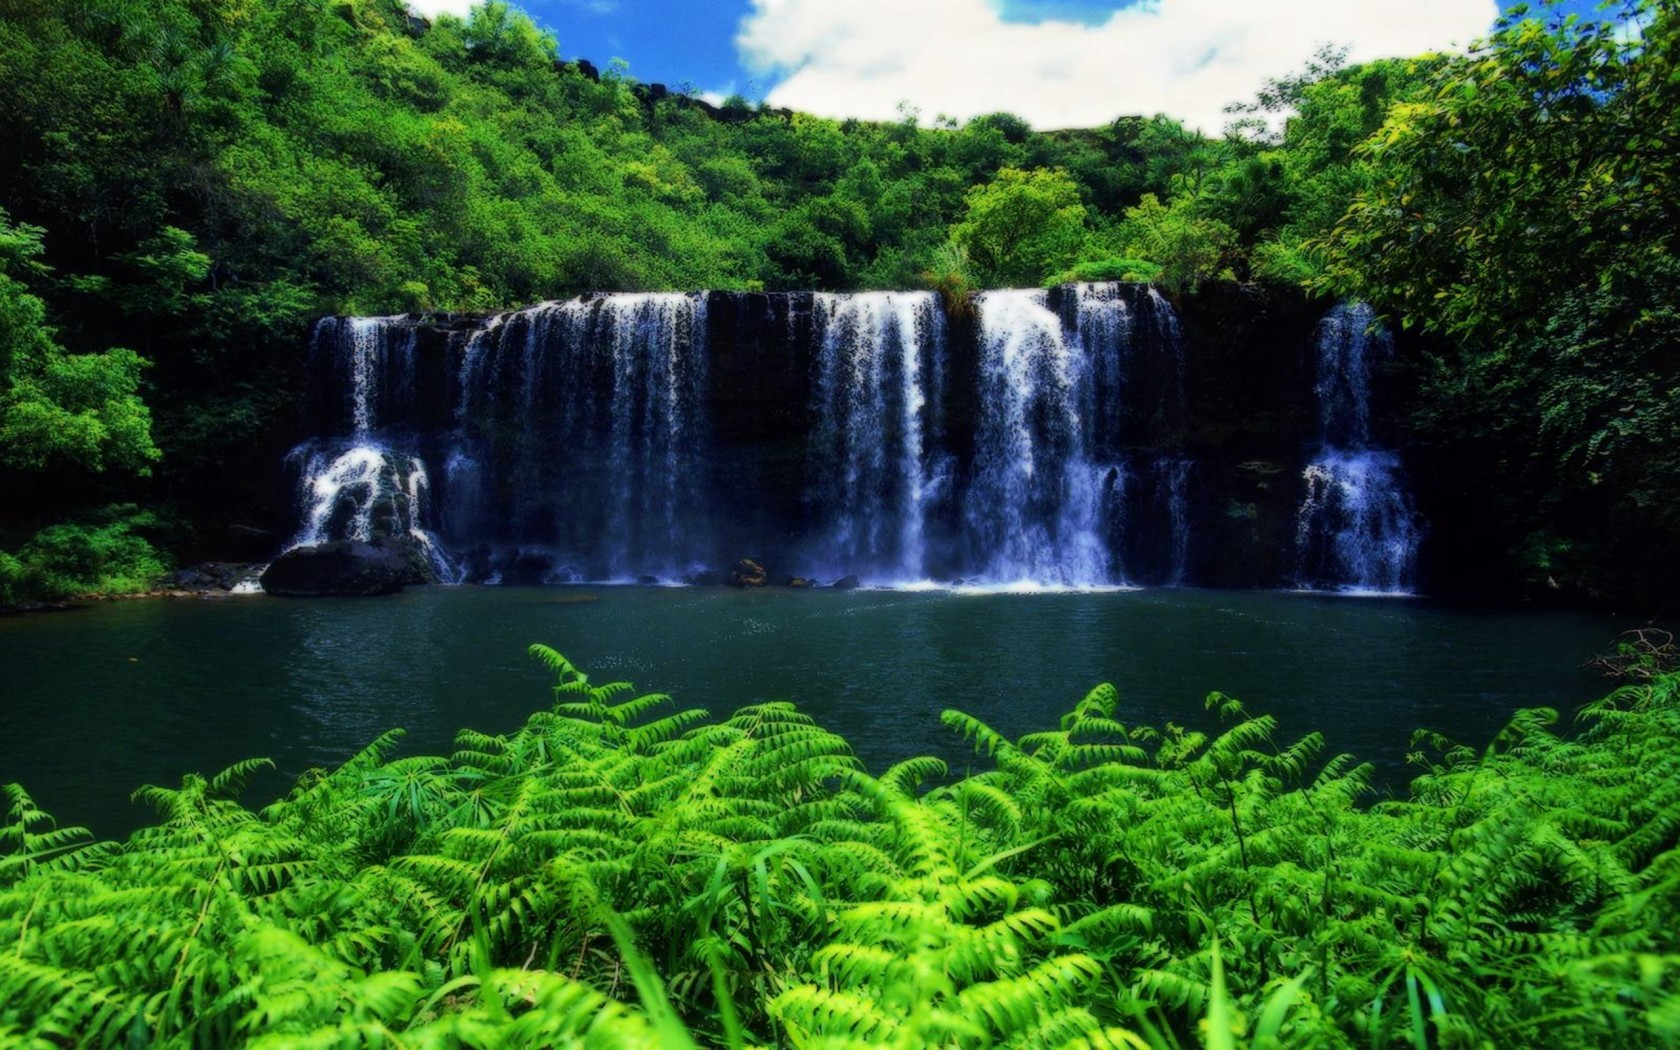 Скачать обои бесплатно Водопады, Водопад, Дерево, Зеленый, Hdr, Гавайи, Земля/природа картинка на рабочий стол ПК